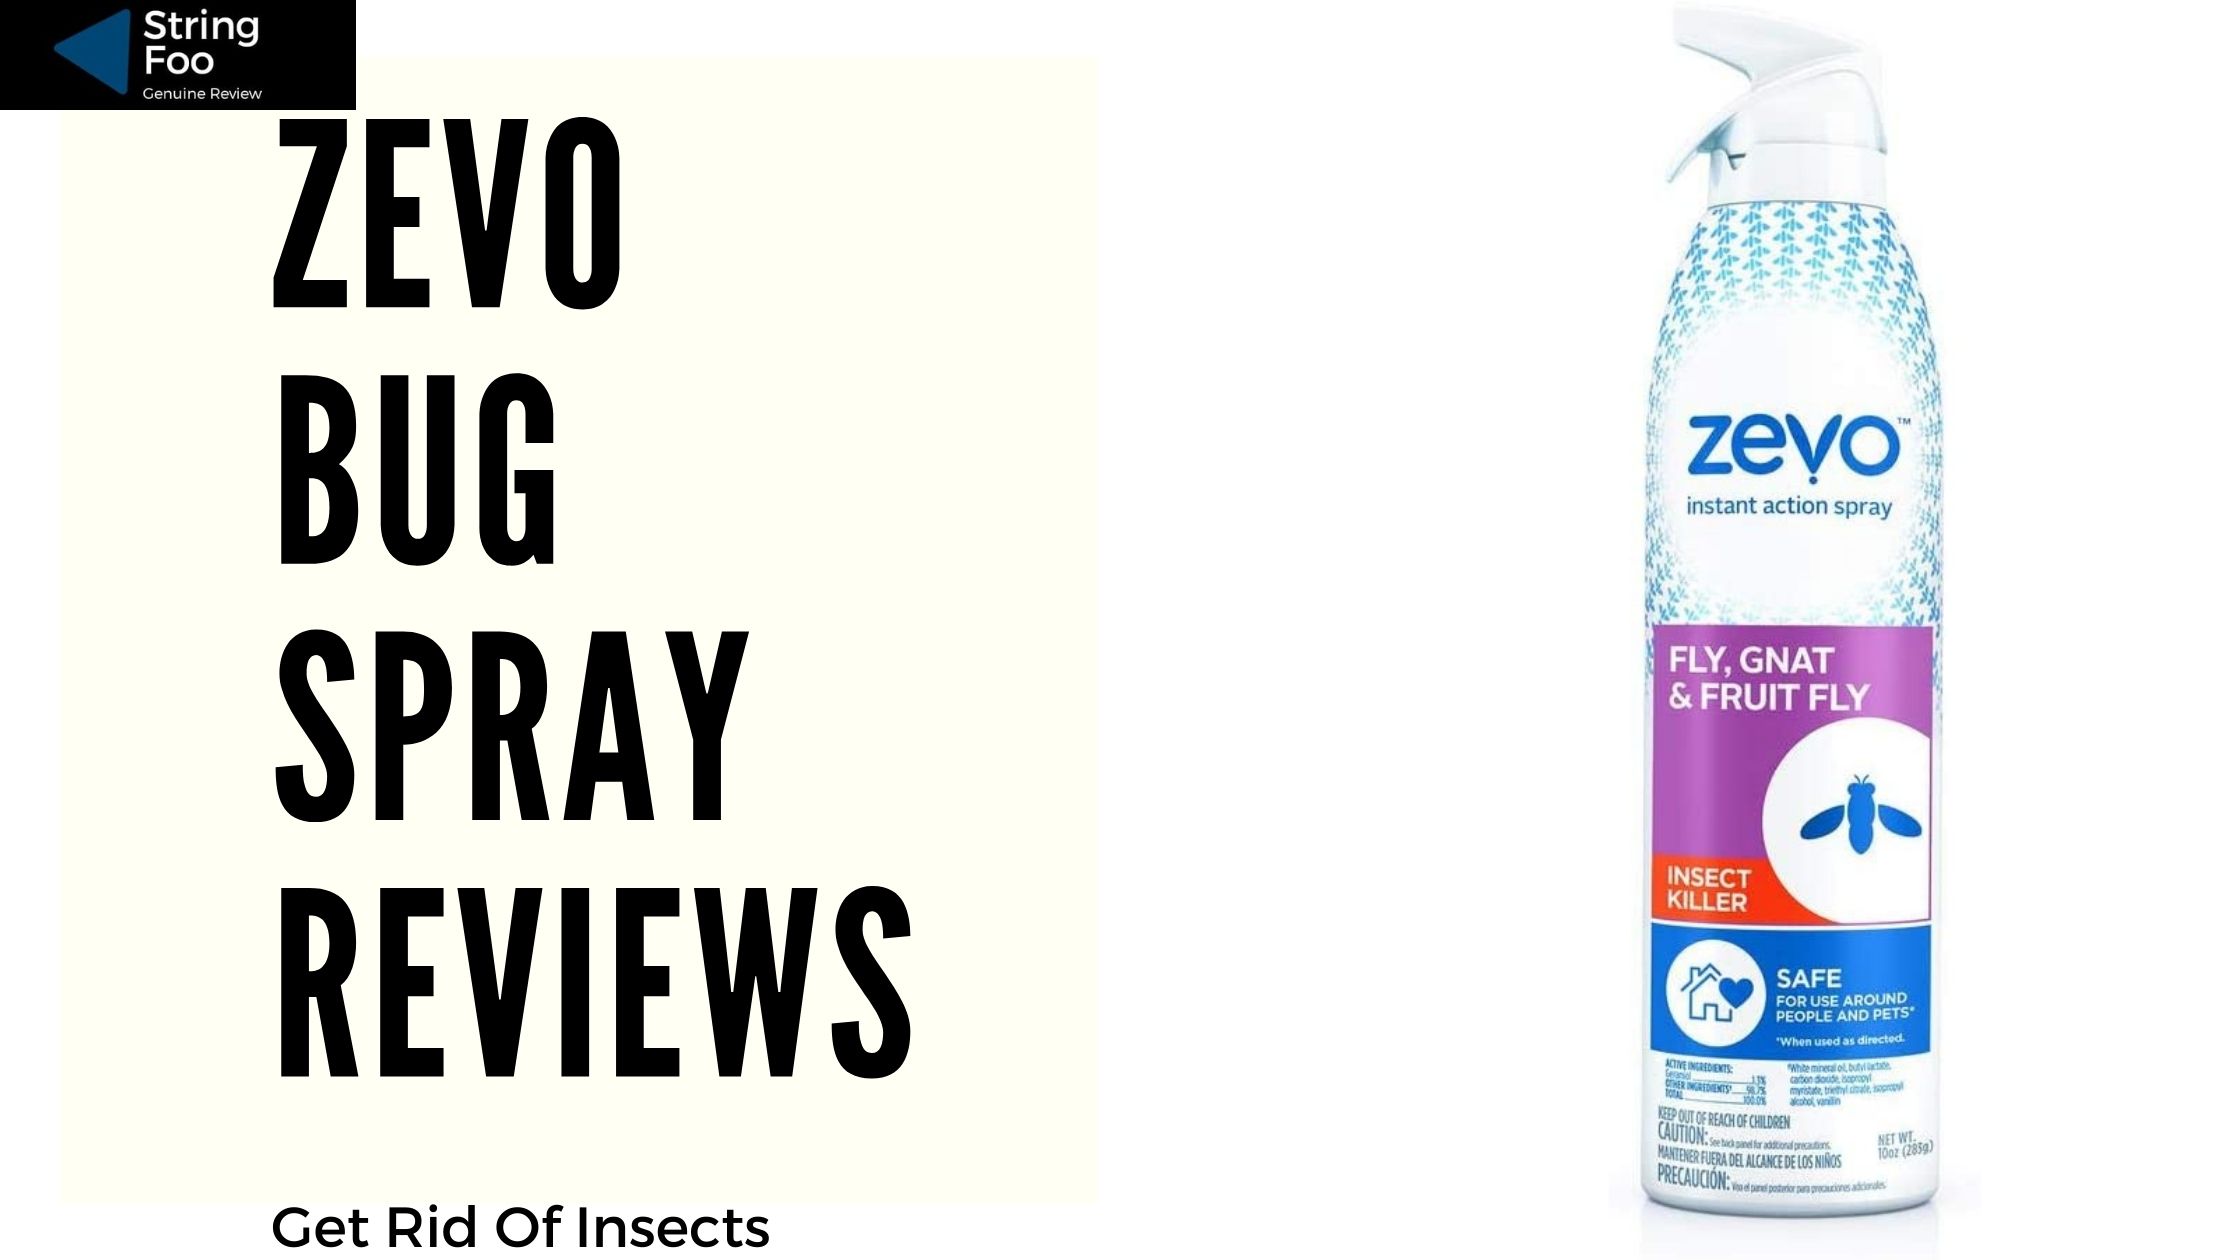 Zevo Bug Spray Reviews